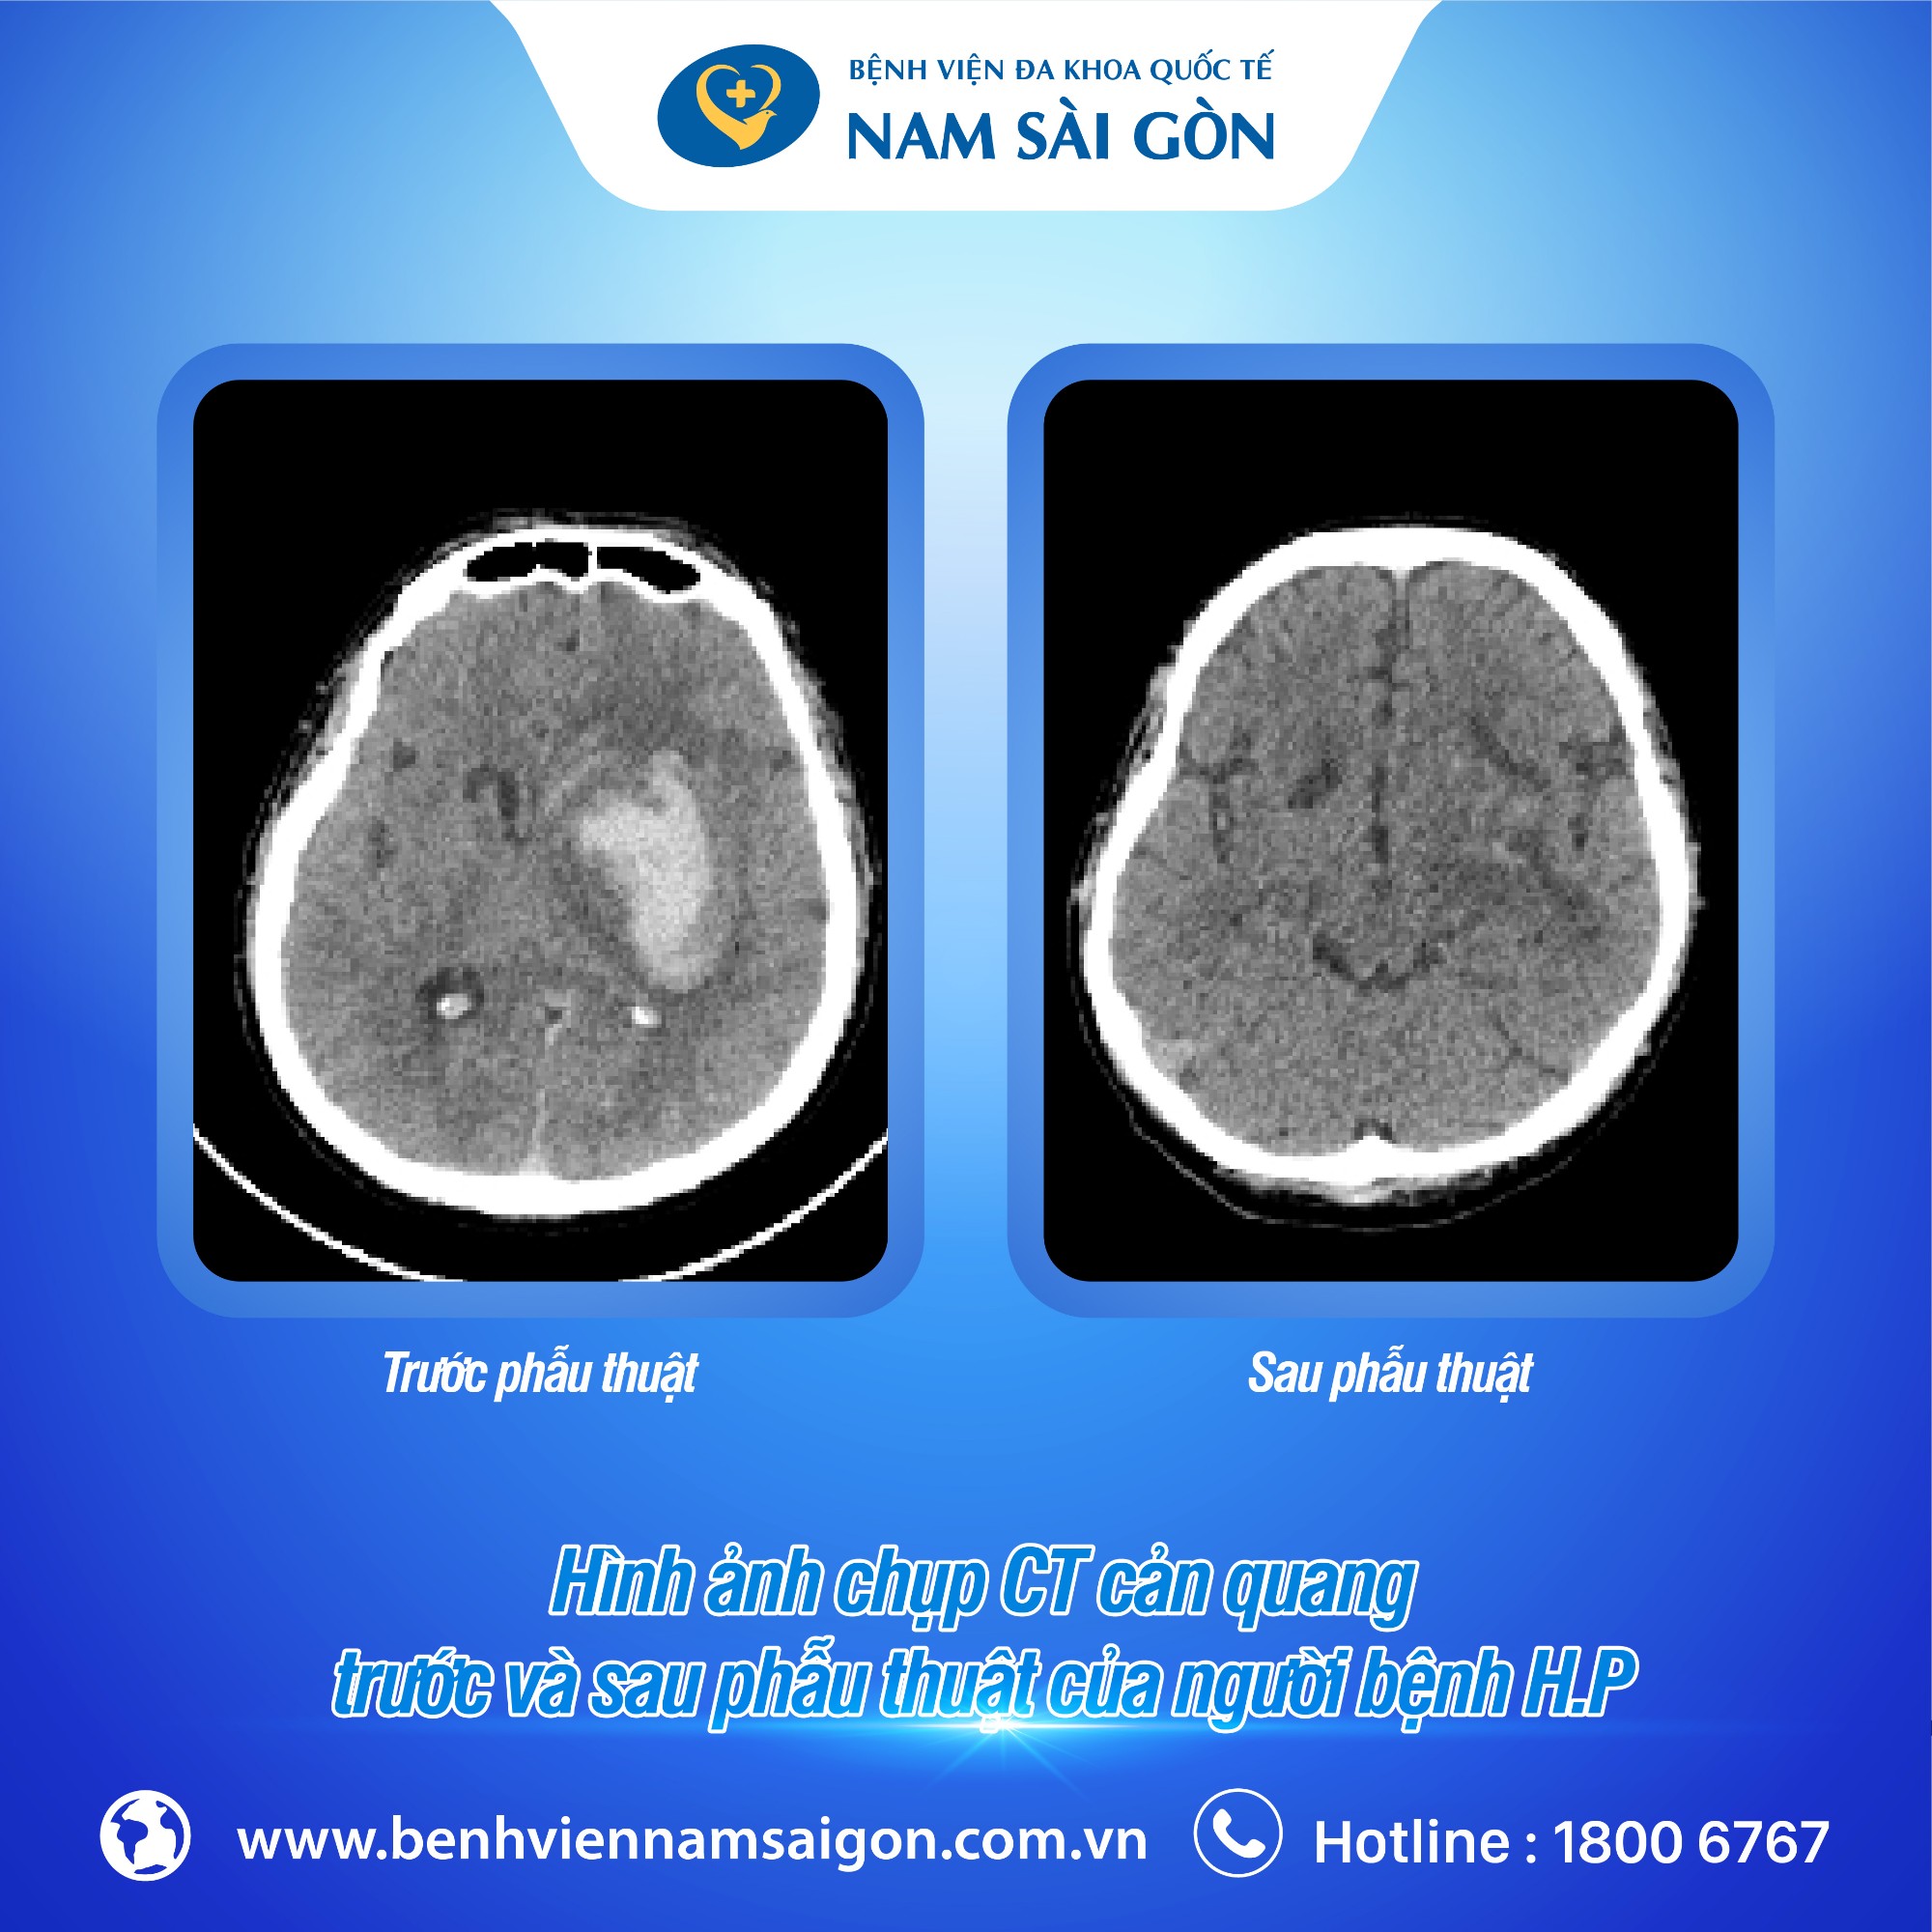 Hình Ảnh Chụp CT Cản Quang Trước Và Sau Phẫu Thuật Của Người Bệnh